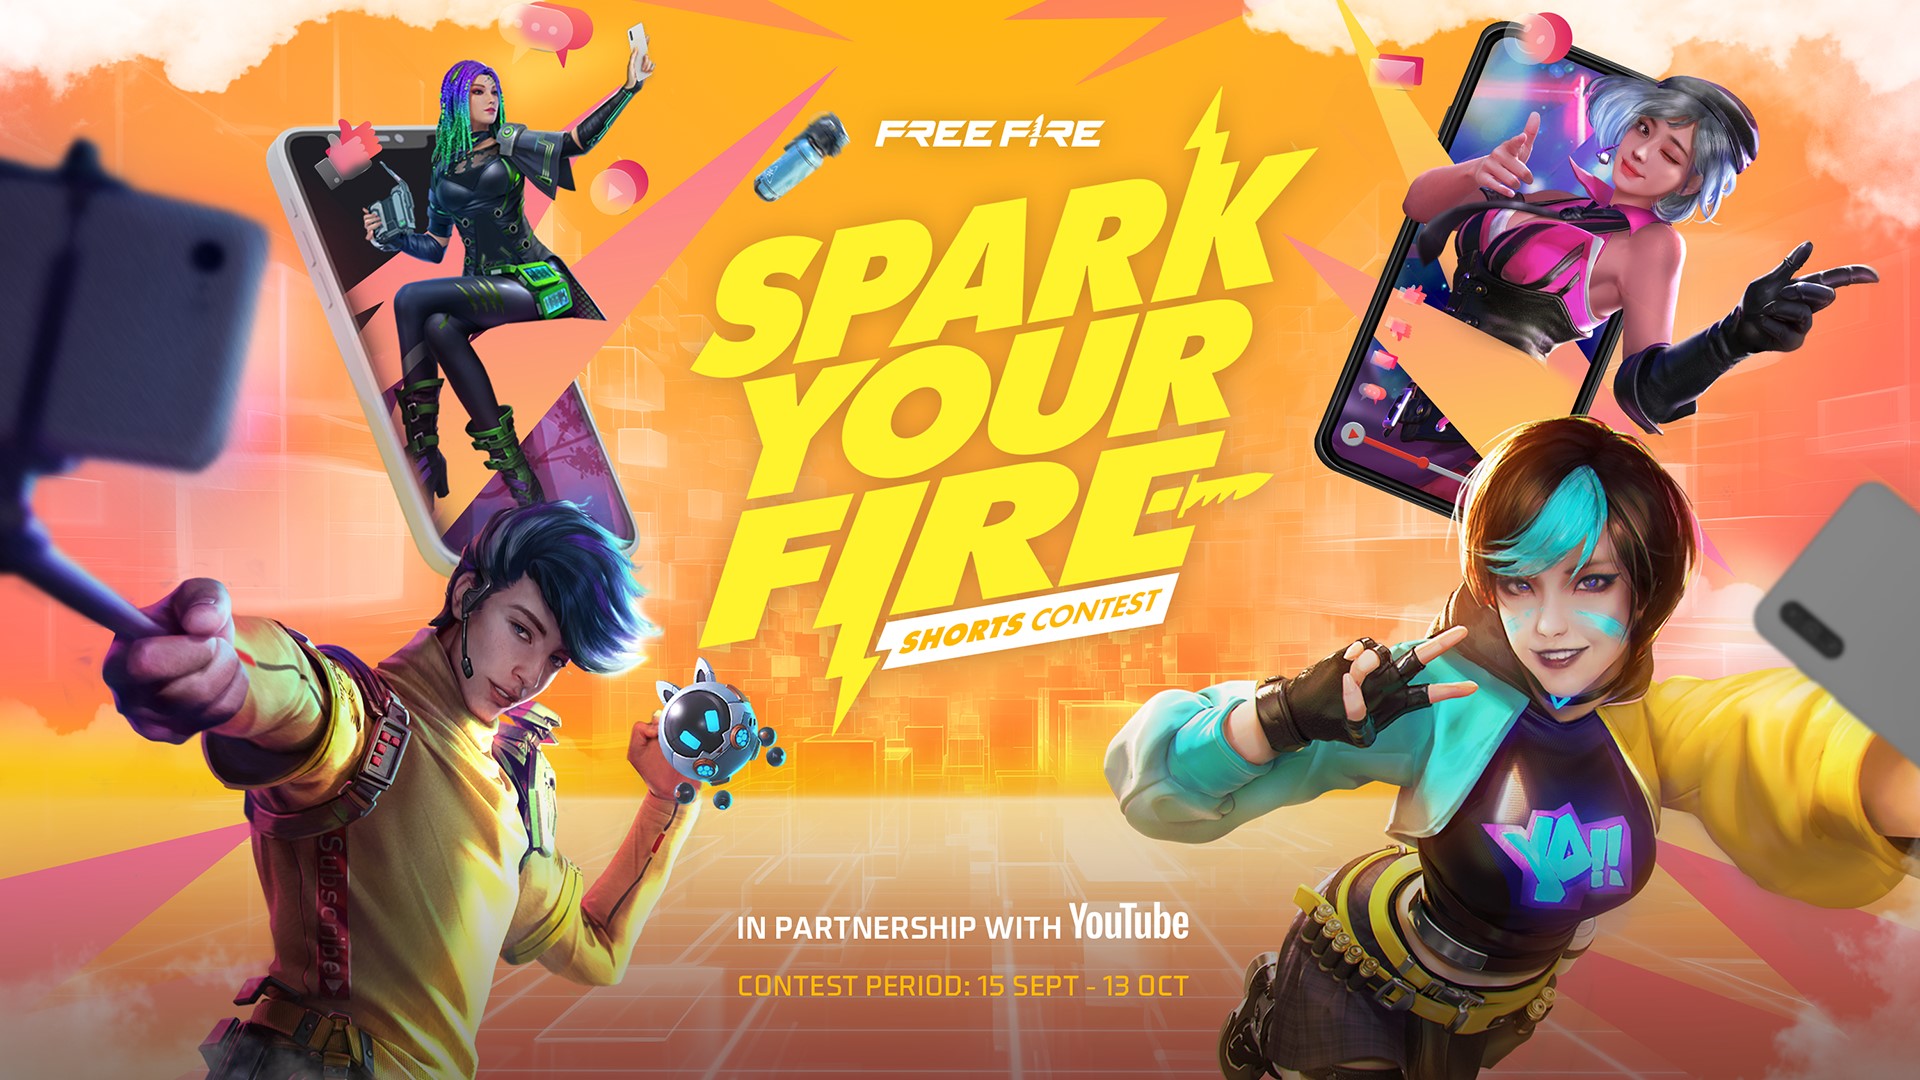 Free Fire đồng hành cùng Youtube công bố sân chơi vô tiền khoáng hậu dành cho nhà sáng tạo nội dung toàn Đông Nam Á - ảnh 1